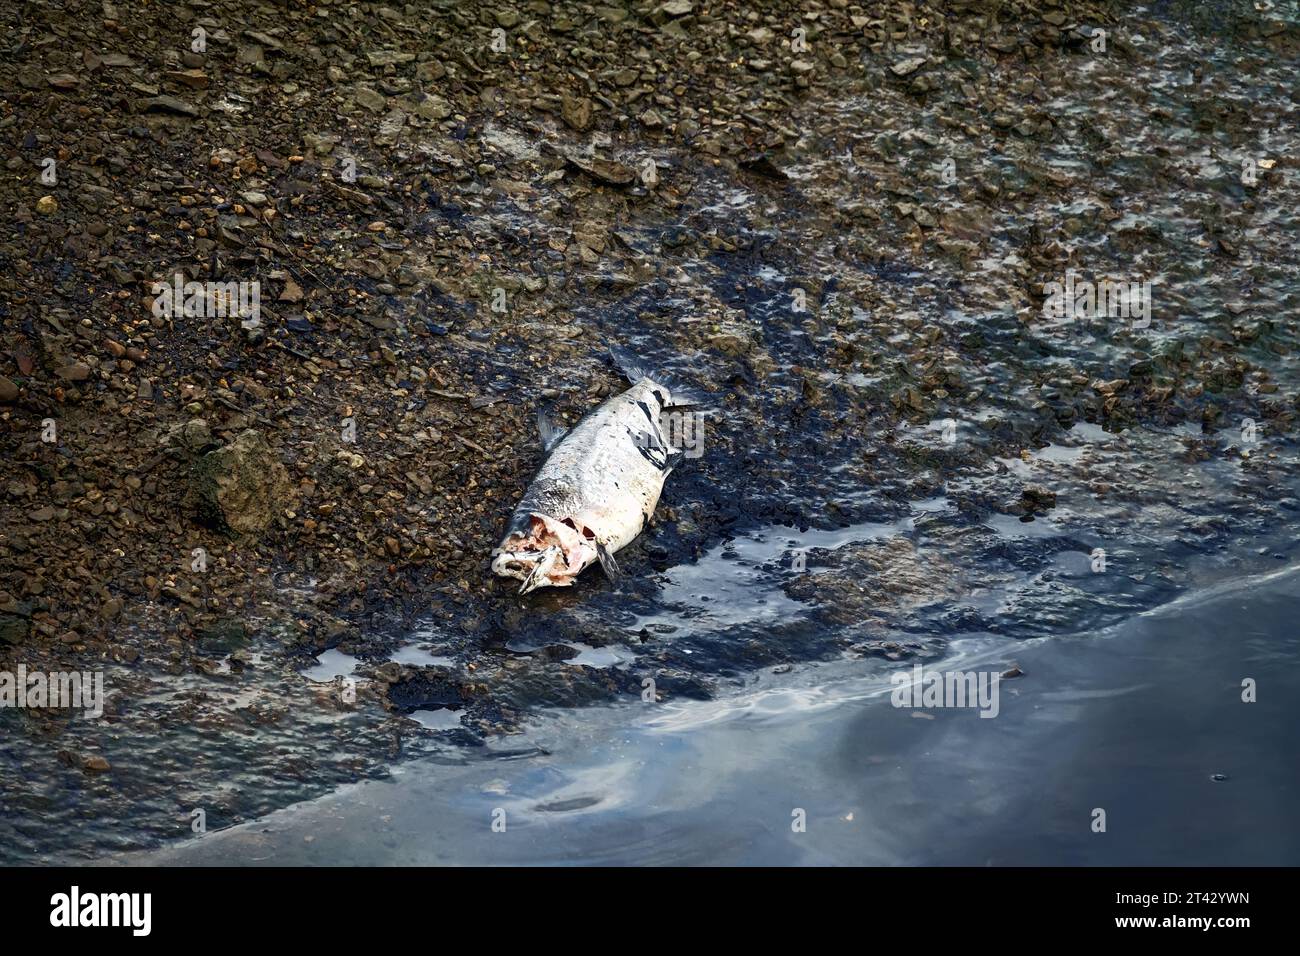 Le saumon va frayer de l'océan aux rivières du Kamchatka. Beaucoup de poissons meurent en chemin. Chum sibérien femelle (Oncorhynchus keta) tué et pecke Banque D'Images